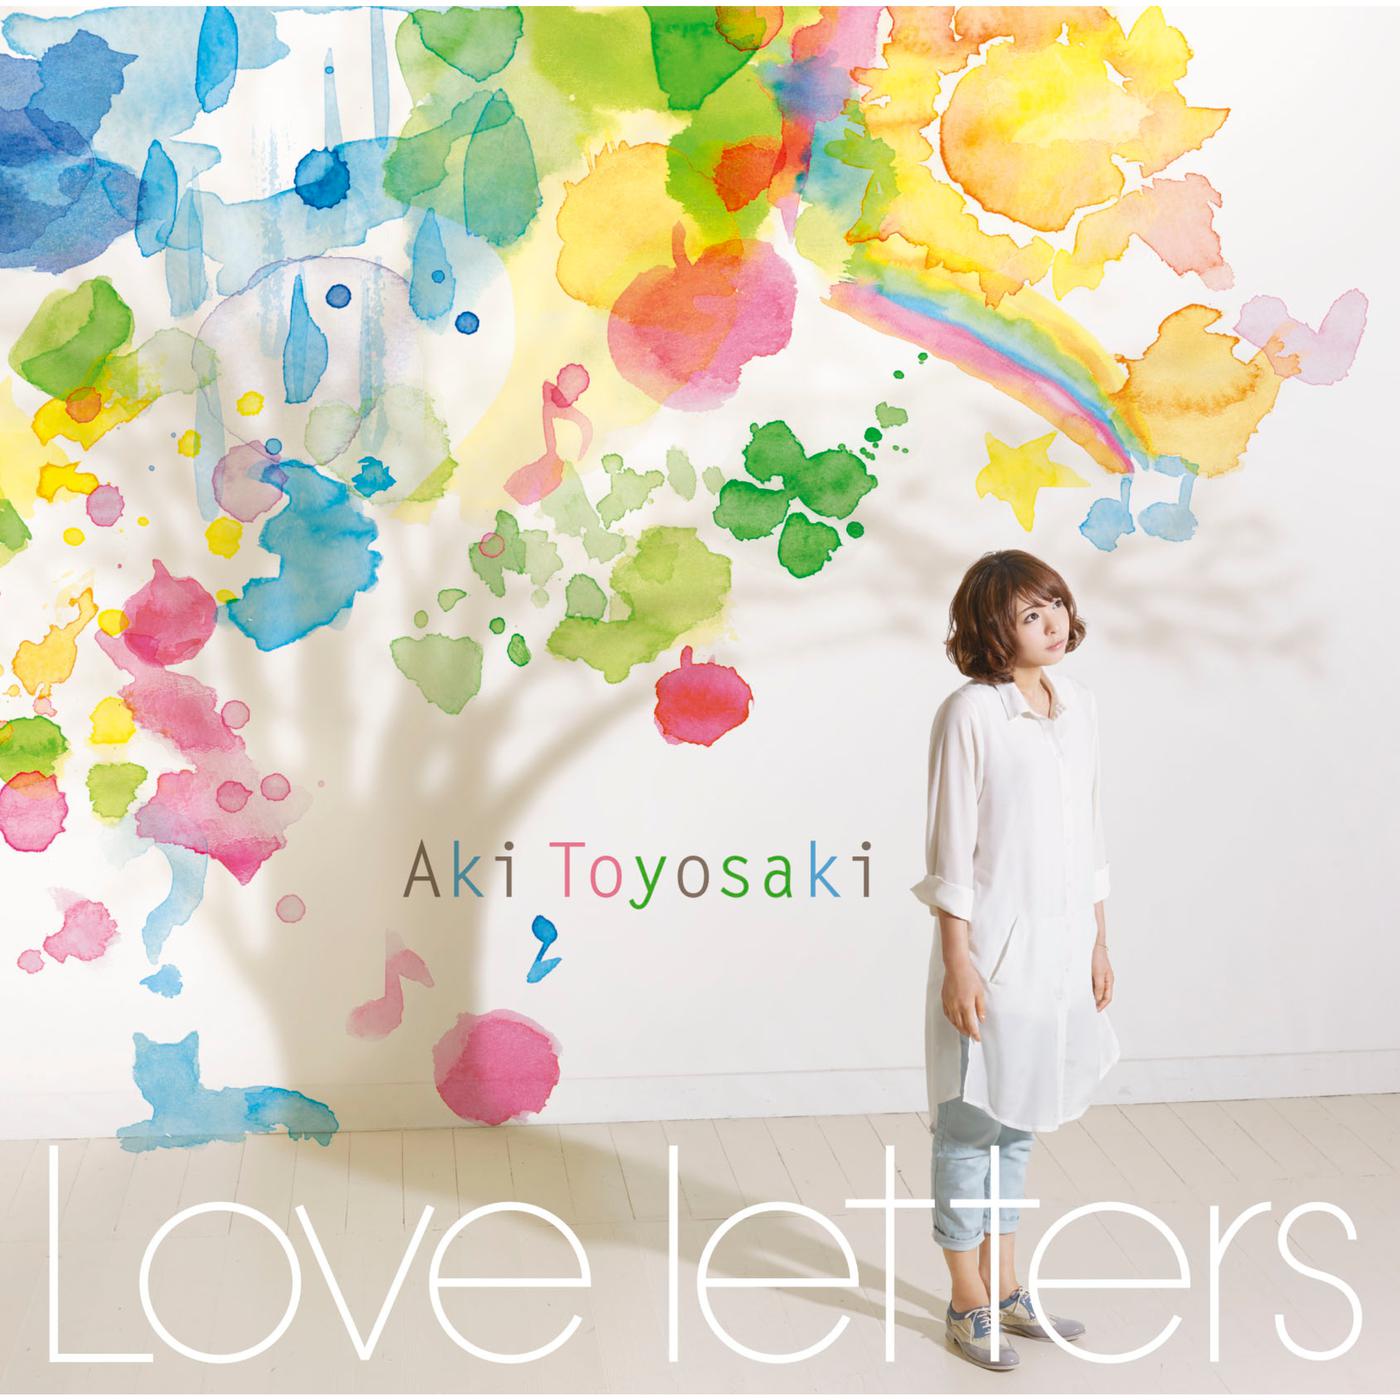 ただいま、おかえり歌词 歌手豊崎愛生-专辑Love letters-单曲《ただいま、おかえり》LRC歌词下载